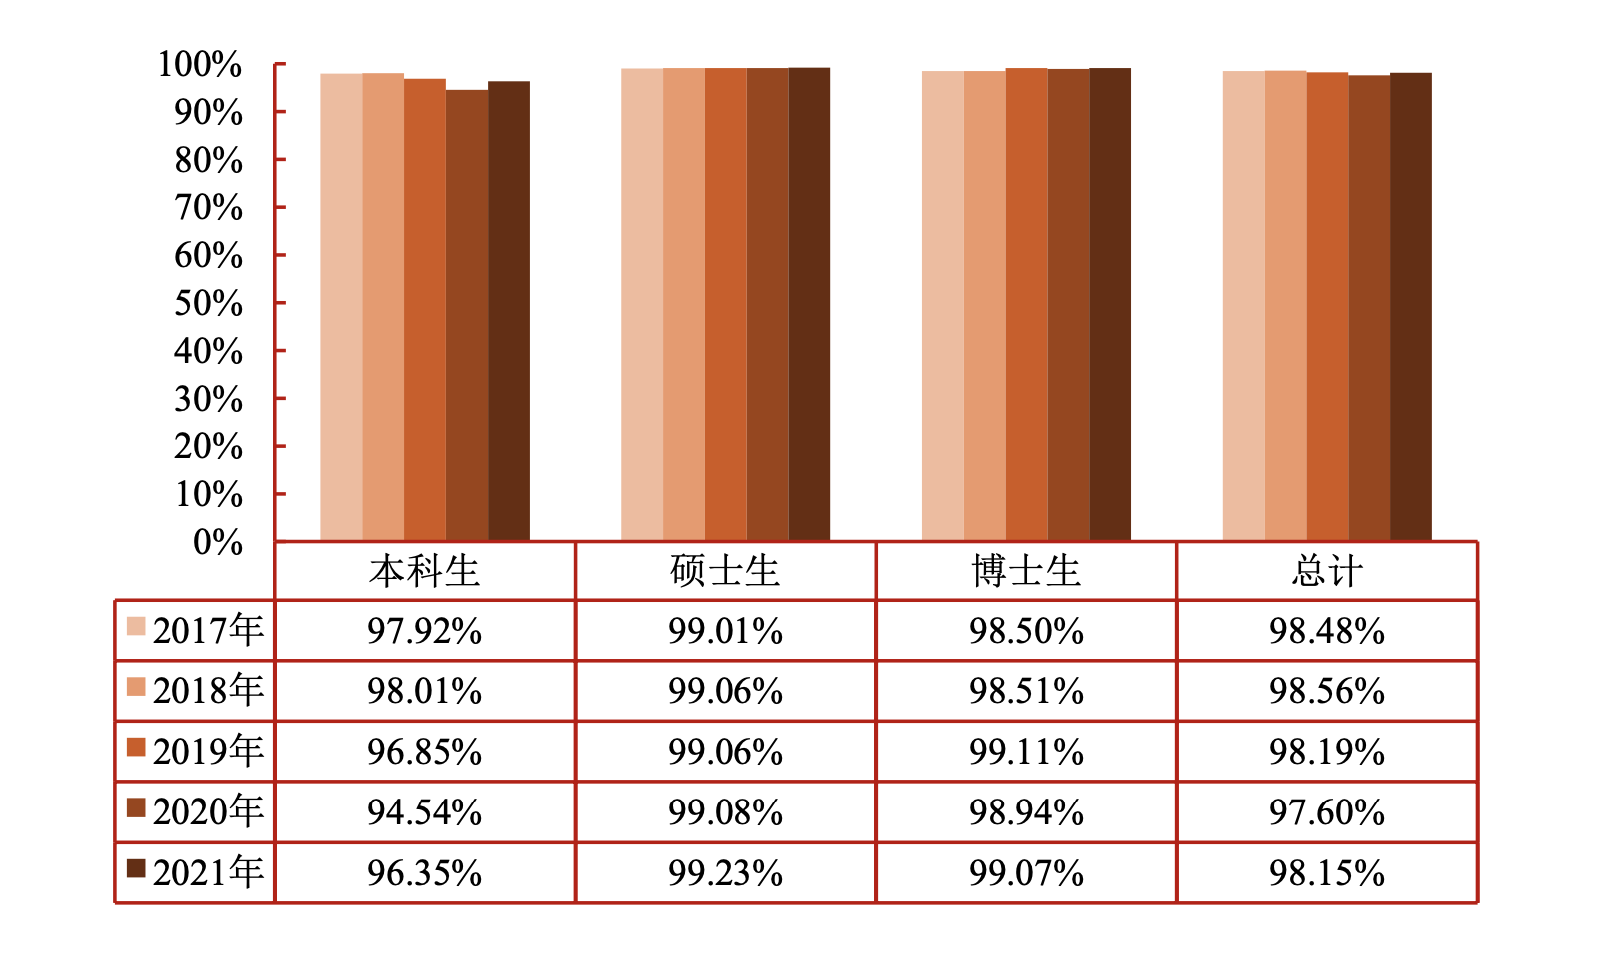 近五年，上海交通大学毕业生毕业去向落实率始终保持在97%以上，居于高位，其中博士生毕业去向落实率均在98%以上，硕士生毕业去向落实率均在99%以上。